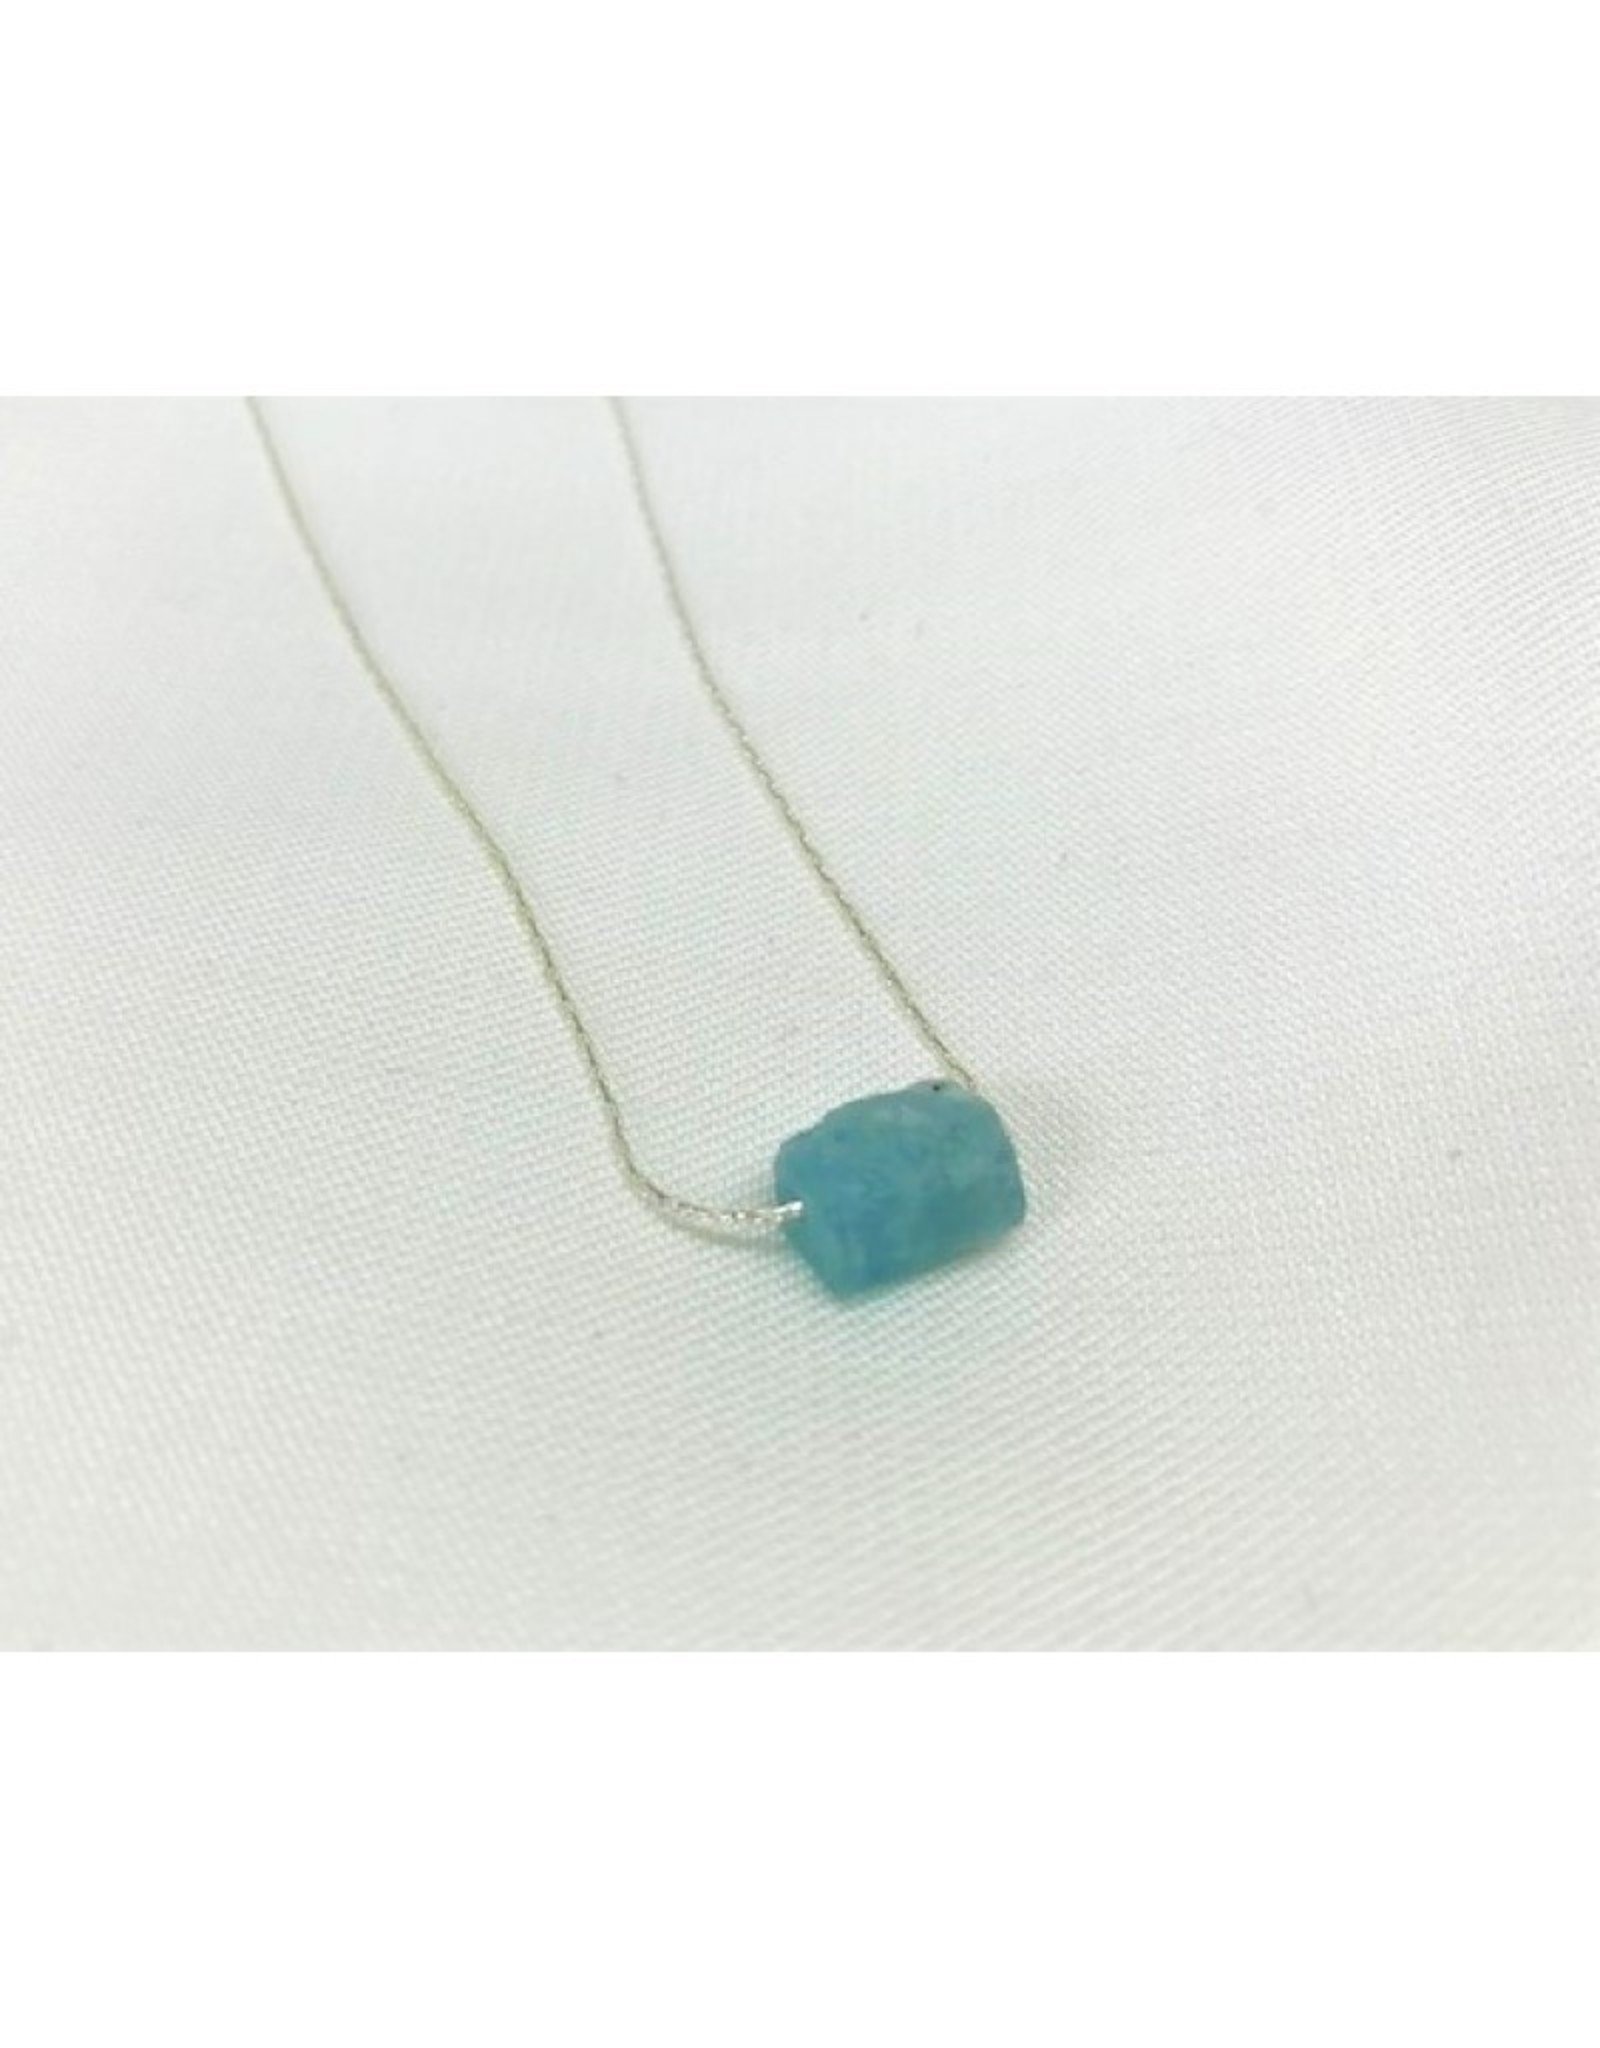 Raw Gemstone Necklace - Aquamarine